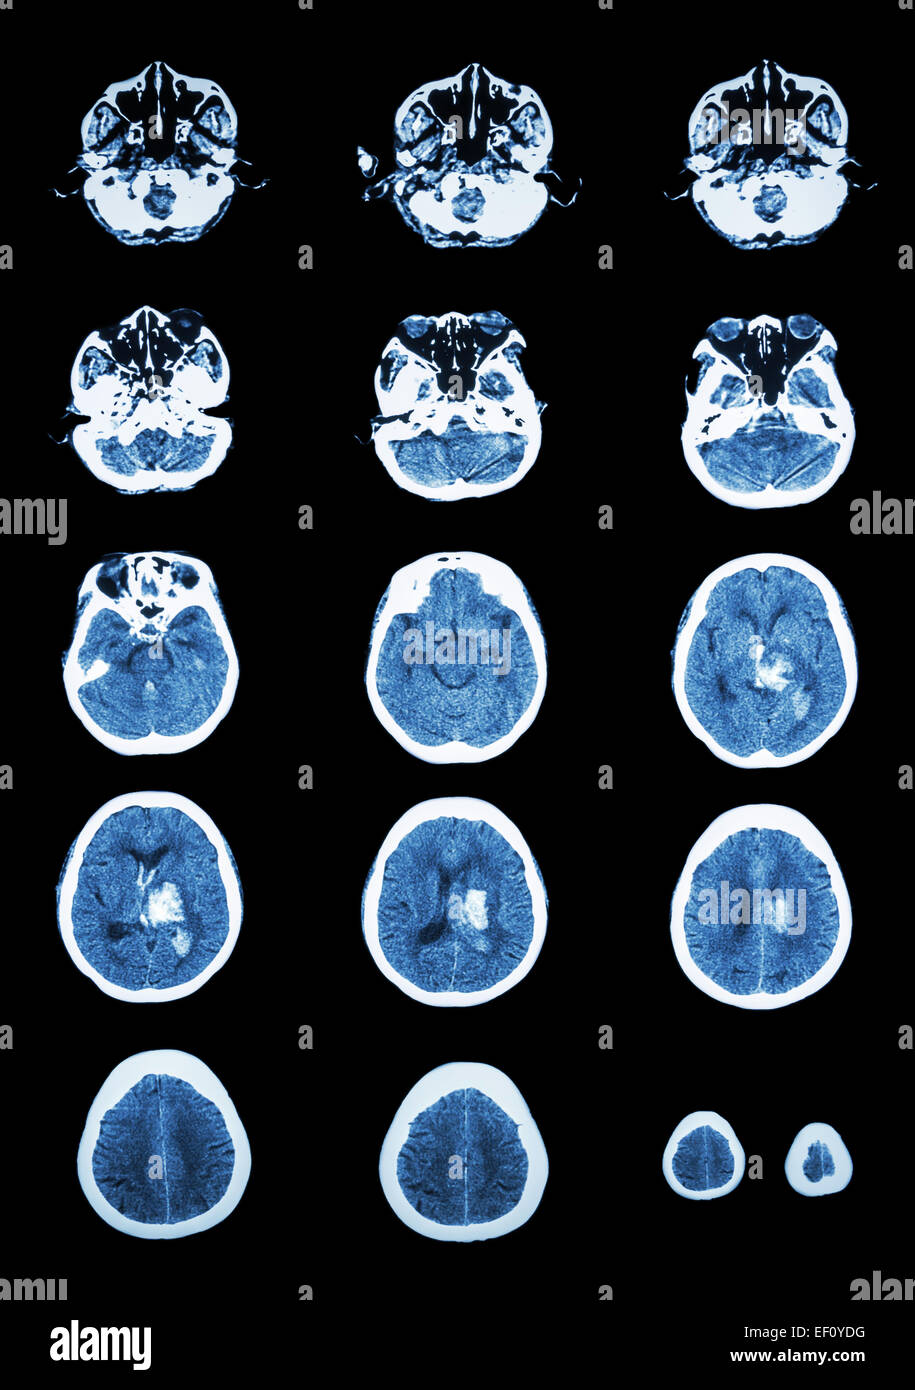 Hämorrhagischer Schlaganfall.  CT (Computertomographie) des Gehirns (zerebrovaskuläre System): Intrazerebrale Blutung am linken Cer Stockfoto